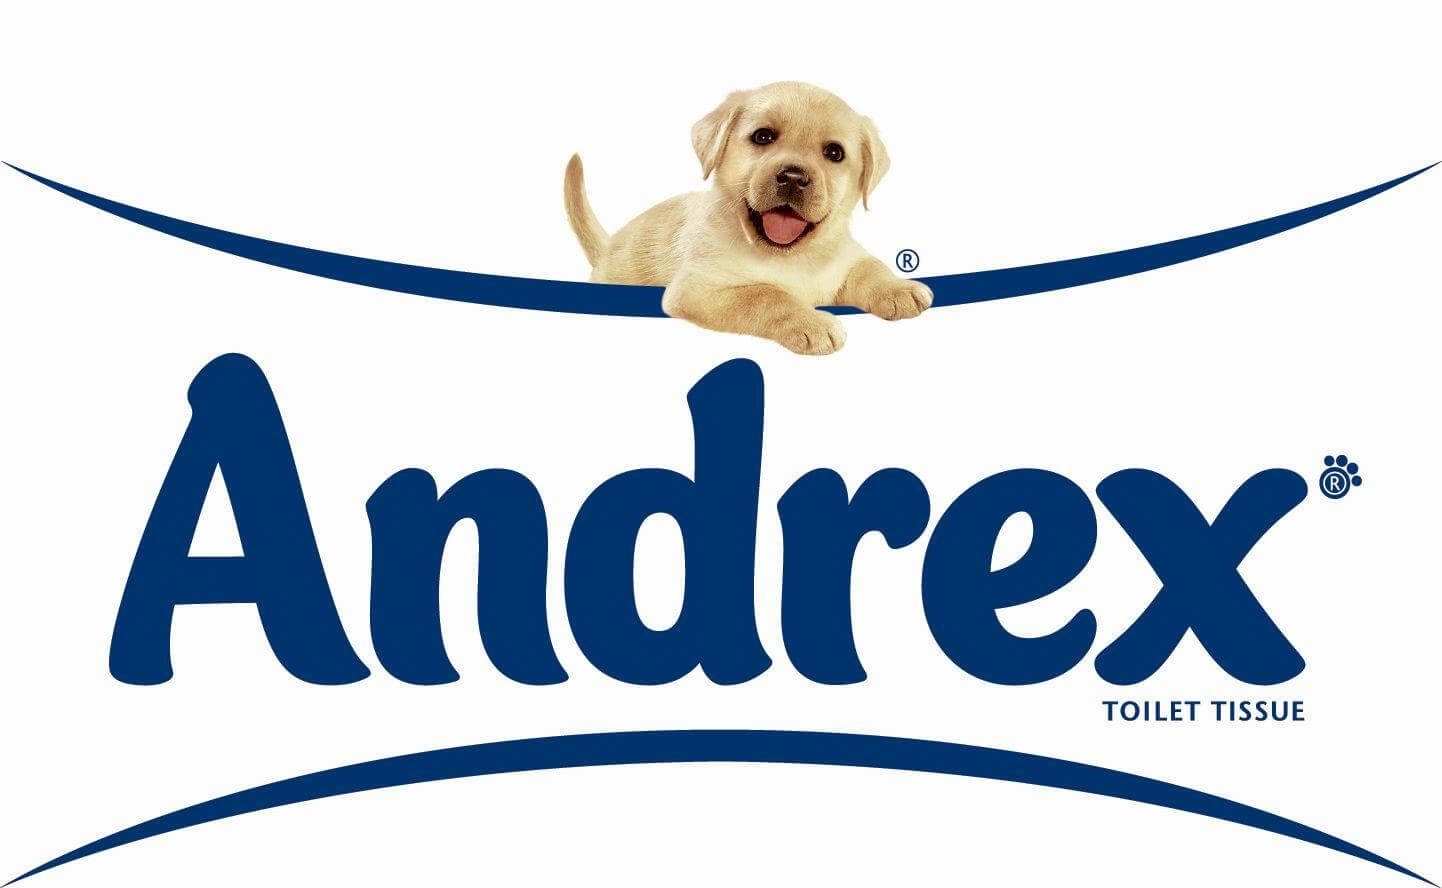 Andrex logo